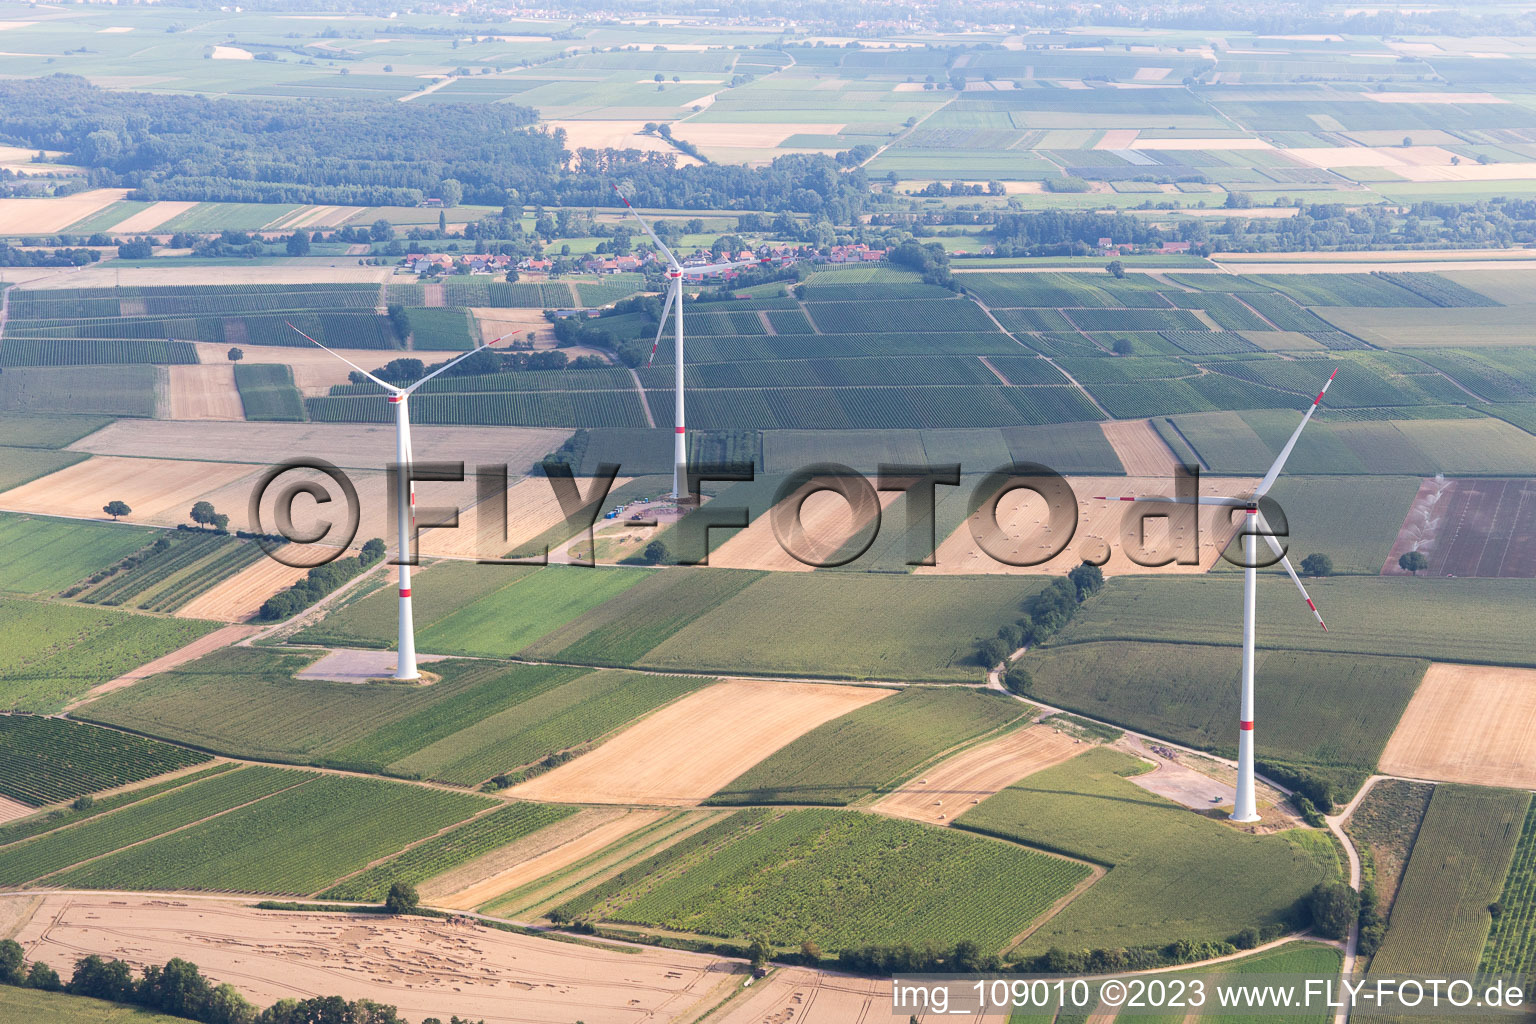 Vue aérienne de Parc éolien à Freckenfeld dans le département Rhénanie-Palatinat, Allemagne